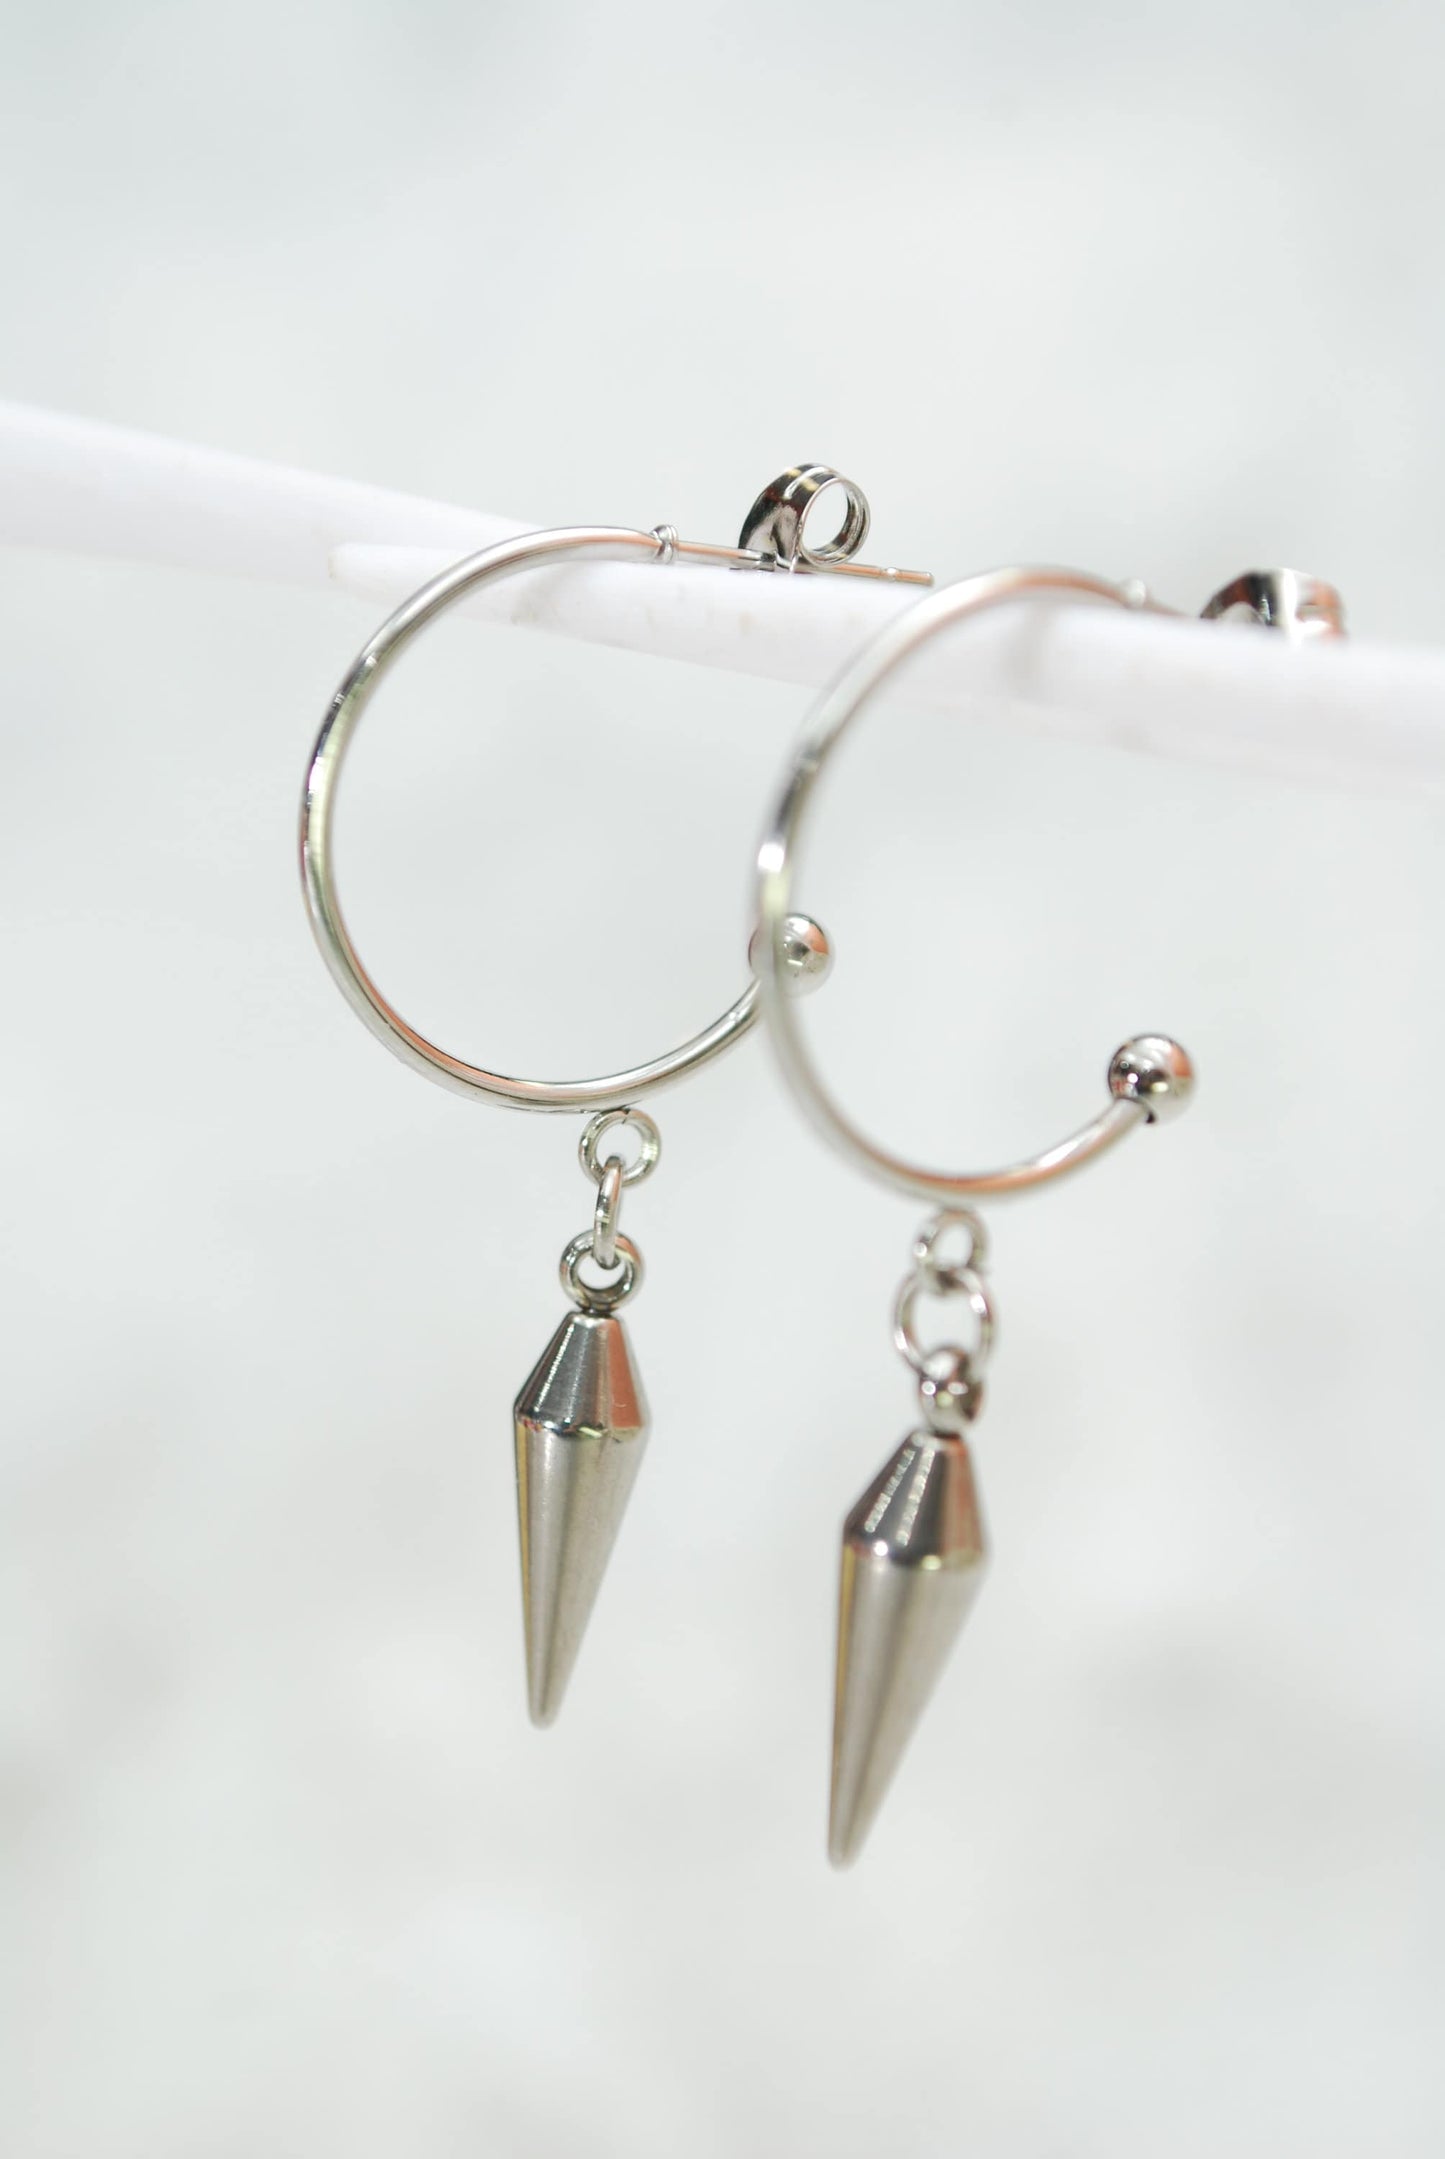 Simple stainless steel spike hook earrings, 4cm - 1.5" simple everyday jewelry, hypoallergenic earrings